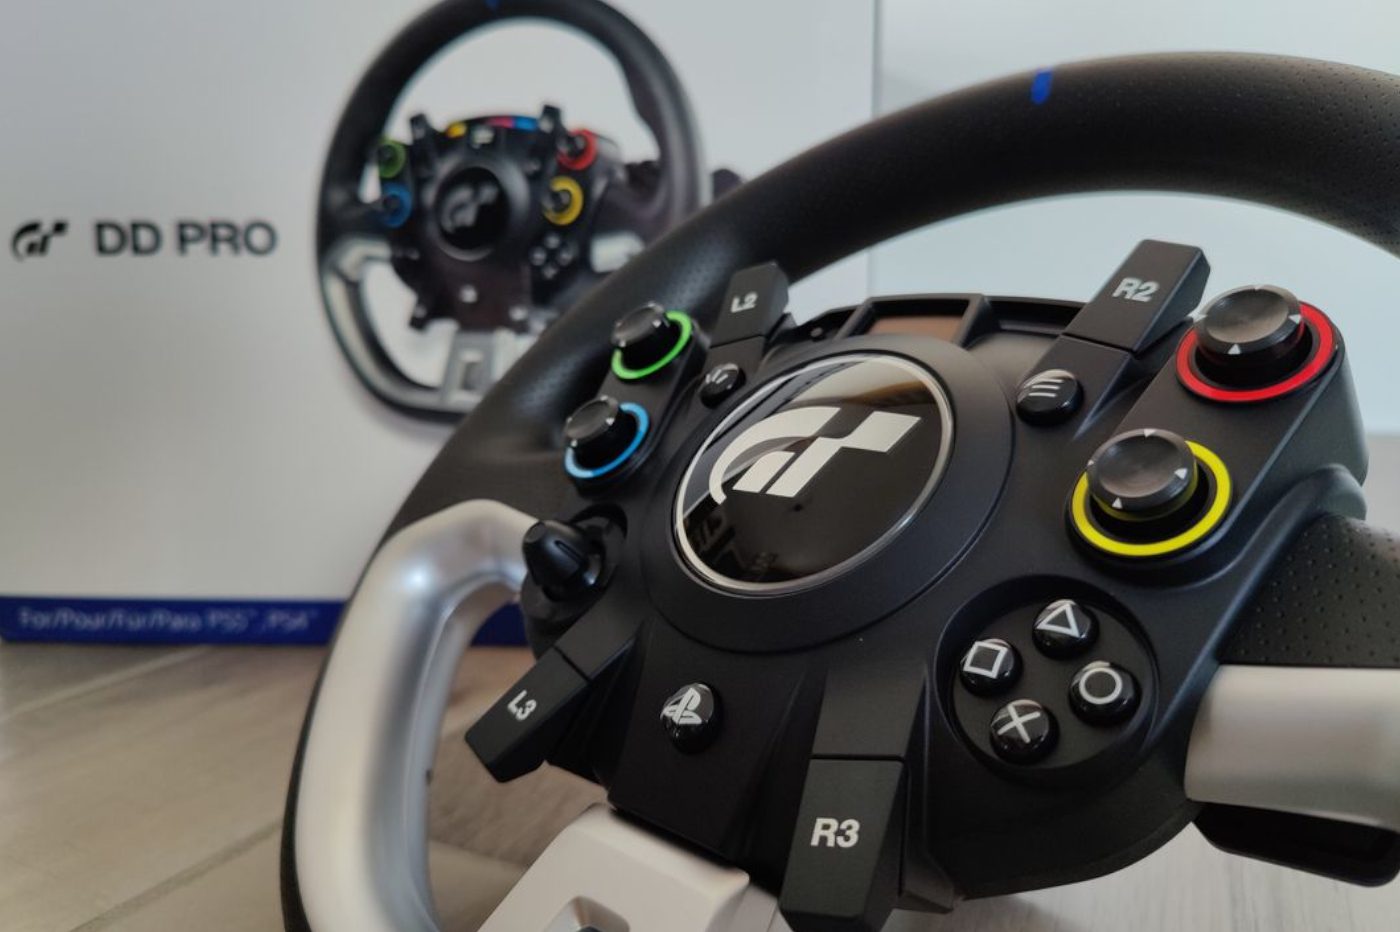 Hori Racing Wheel for PlayStation 3 & 4 : meilleur prix, test et actualités  - Les Numériques